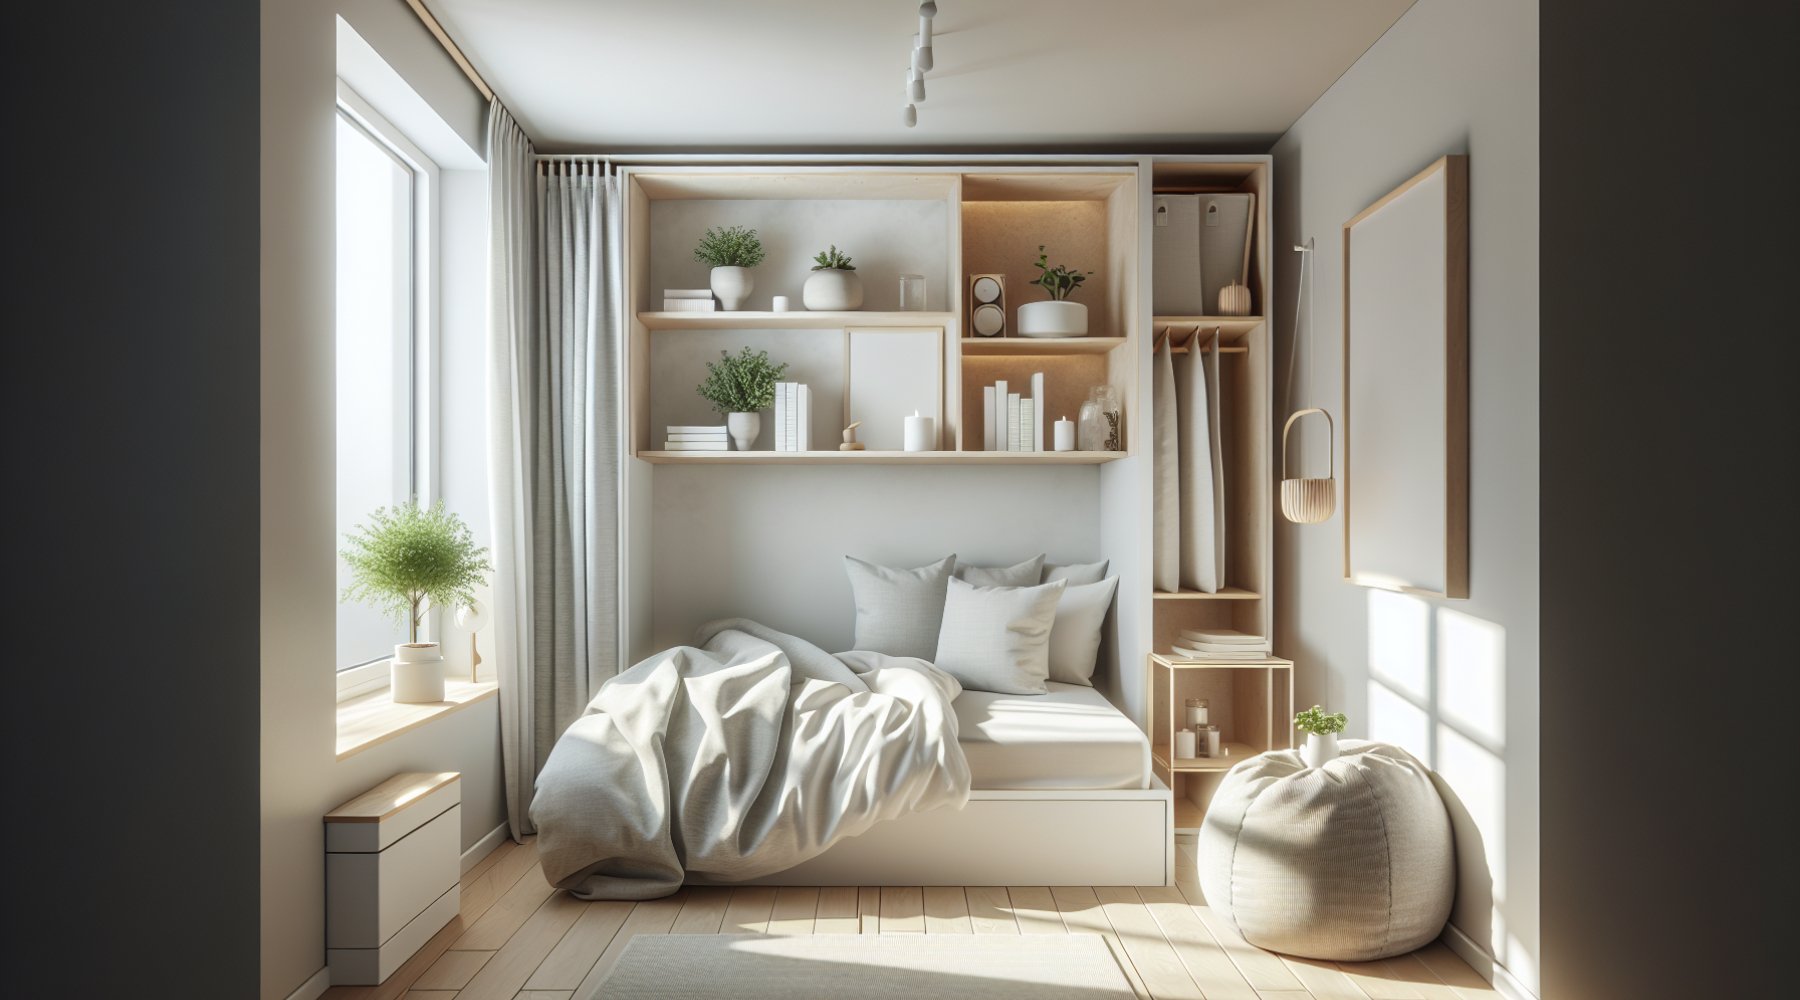 Small Bedroom Ideas: Creating a Minimalist Oasis